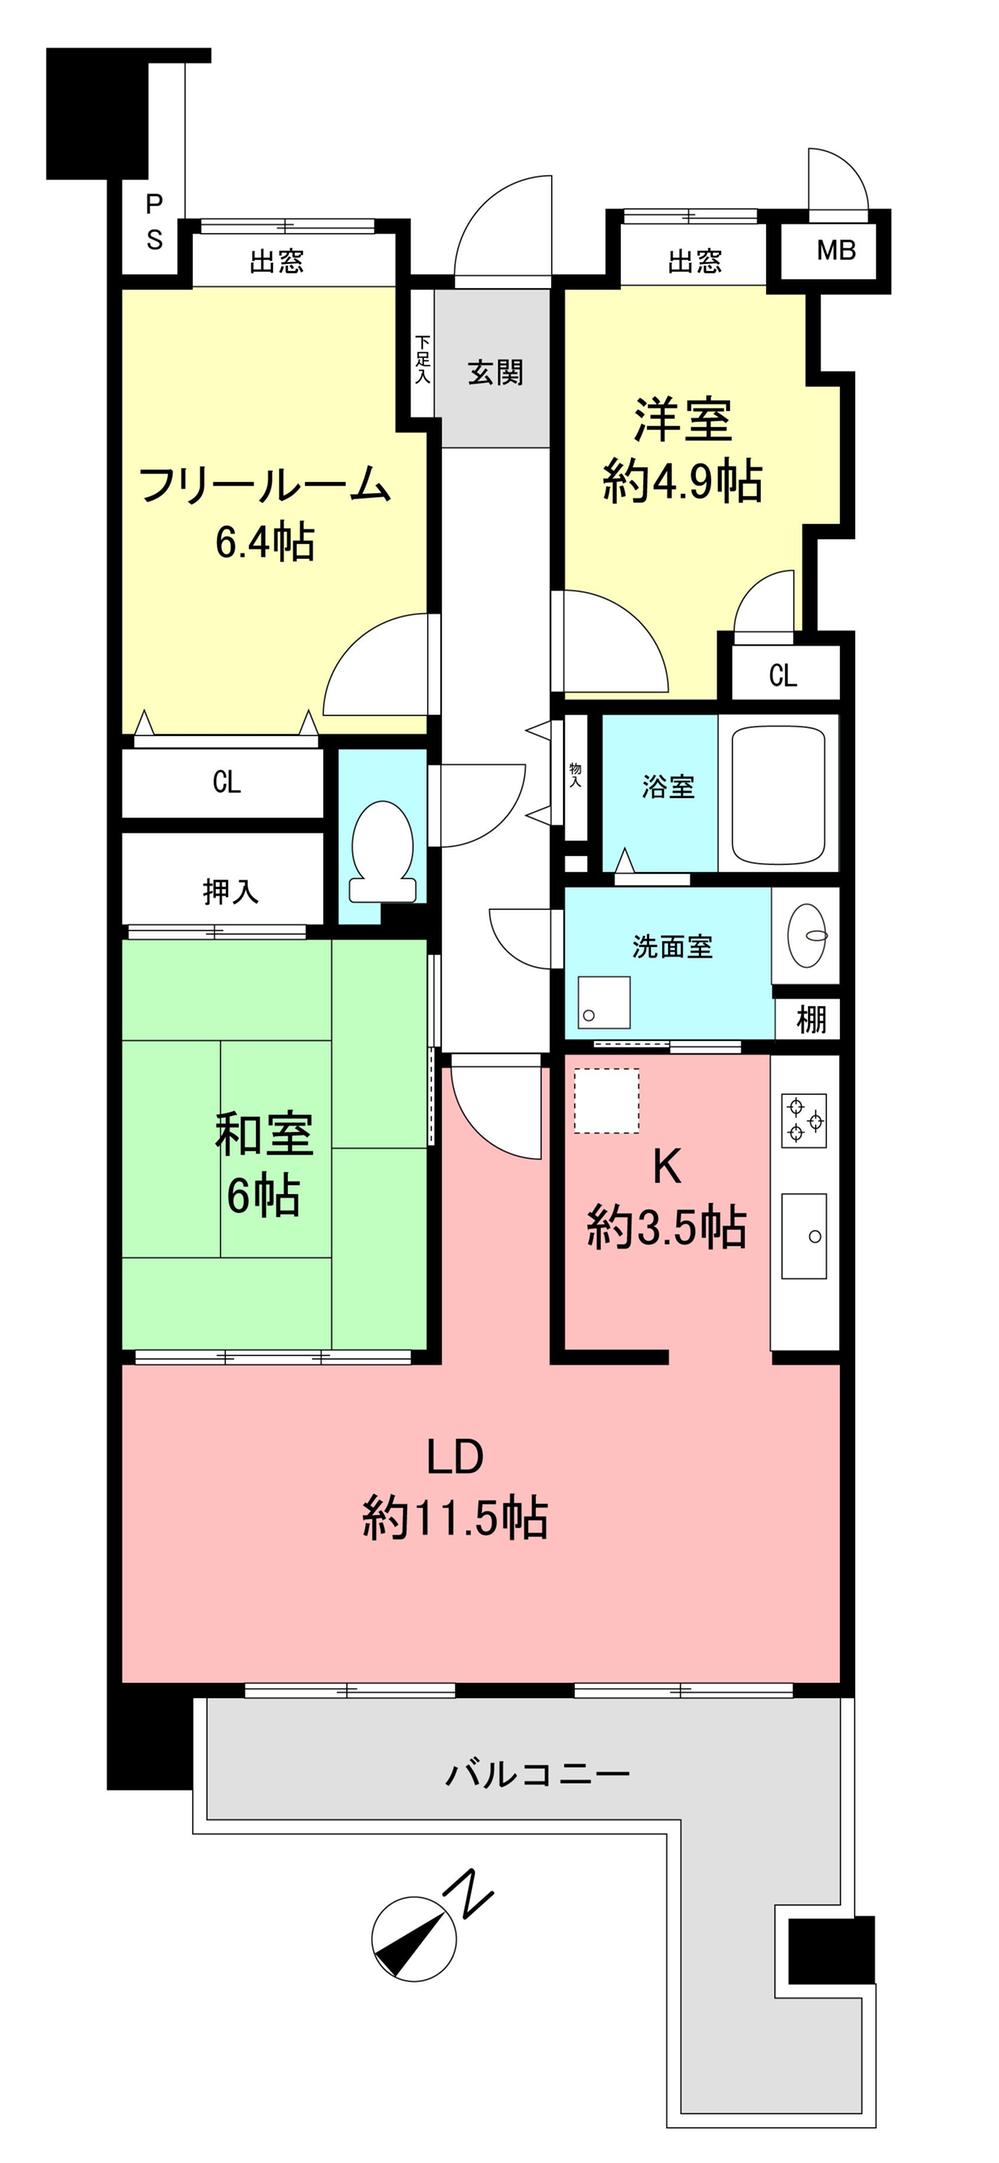 Floor plan. 2LDK + S (storeroom), Price 31,800,000 yen, Footprint 72.6 sq m , Balcony area 9.67 sq m